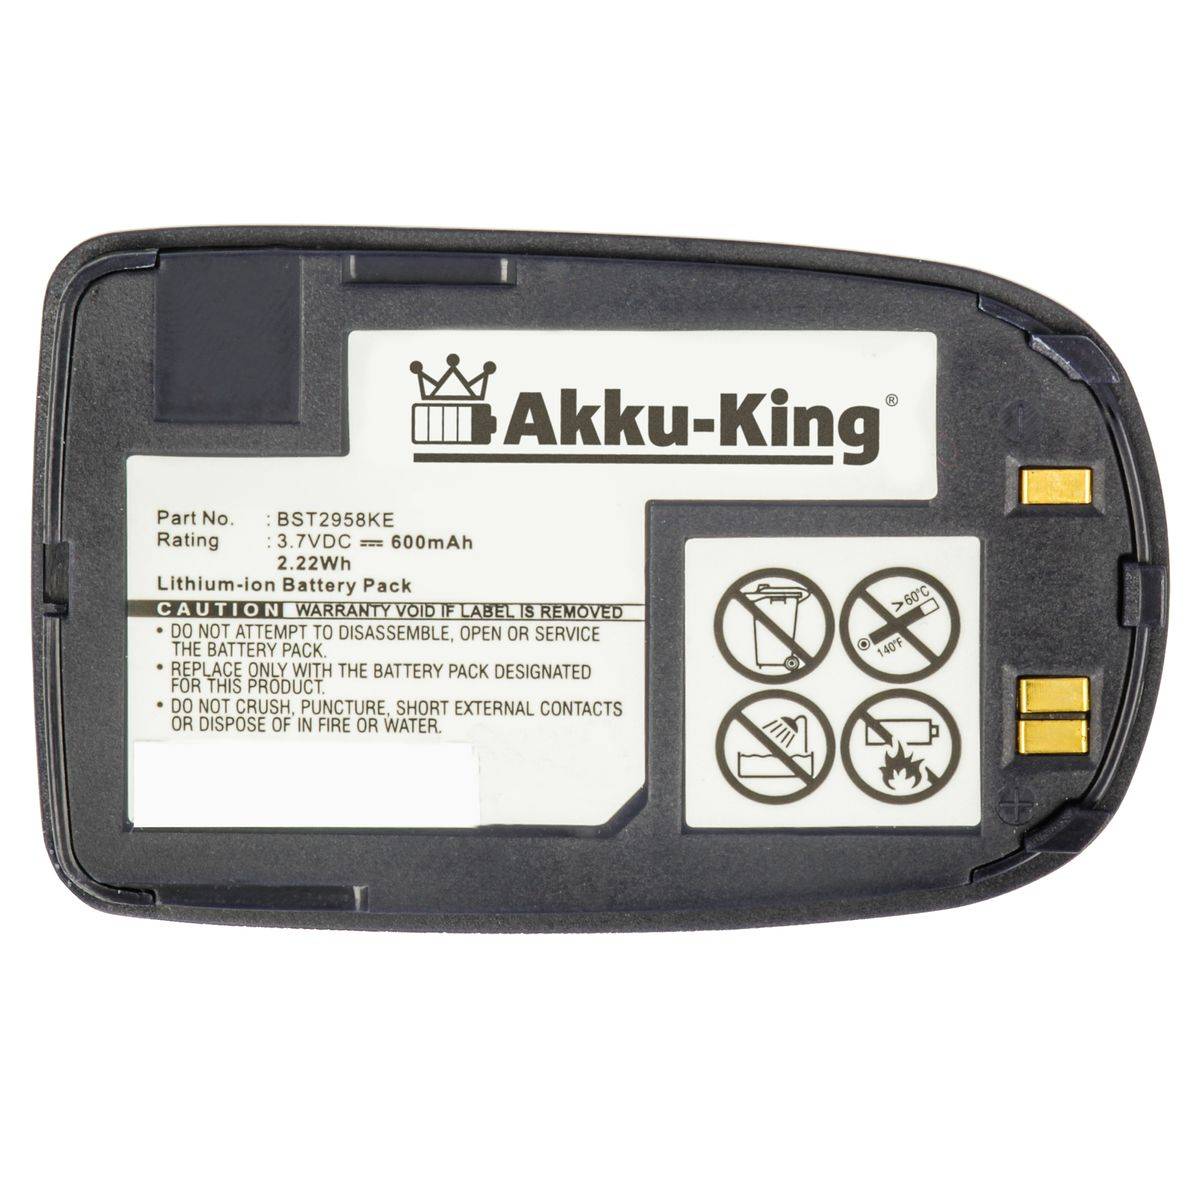 mit dunkelblau kompatibel Handy-Akku, BST2958 Li-Ion Akku Volt, 600mAh AKKU-KING Samsung 3.7